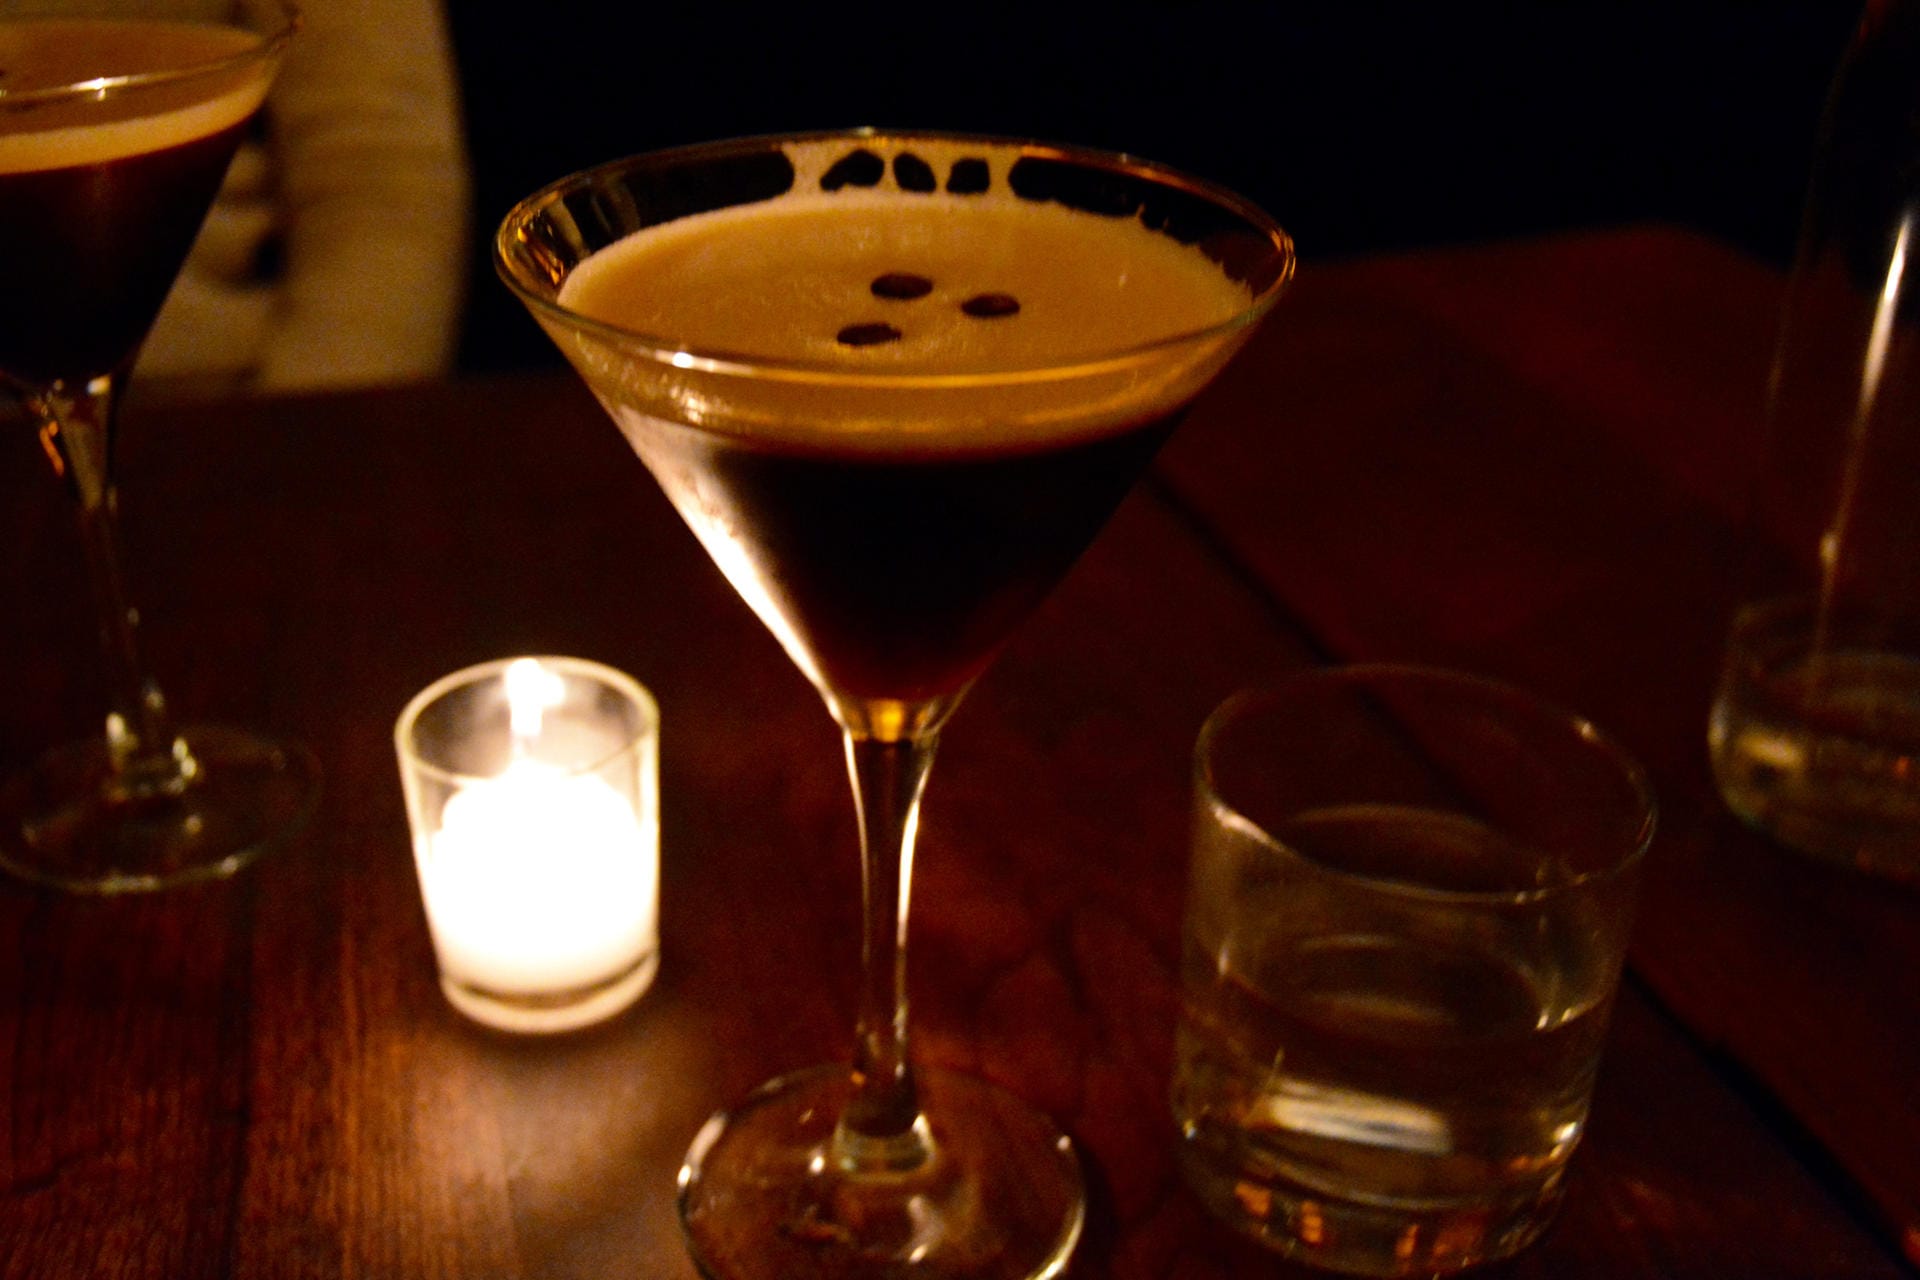 Für den Espresso Martini mixt man 2cl Kaffeelikör wie Kahlùa, 4cl Wodka und 2cl Espresso.